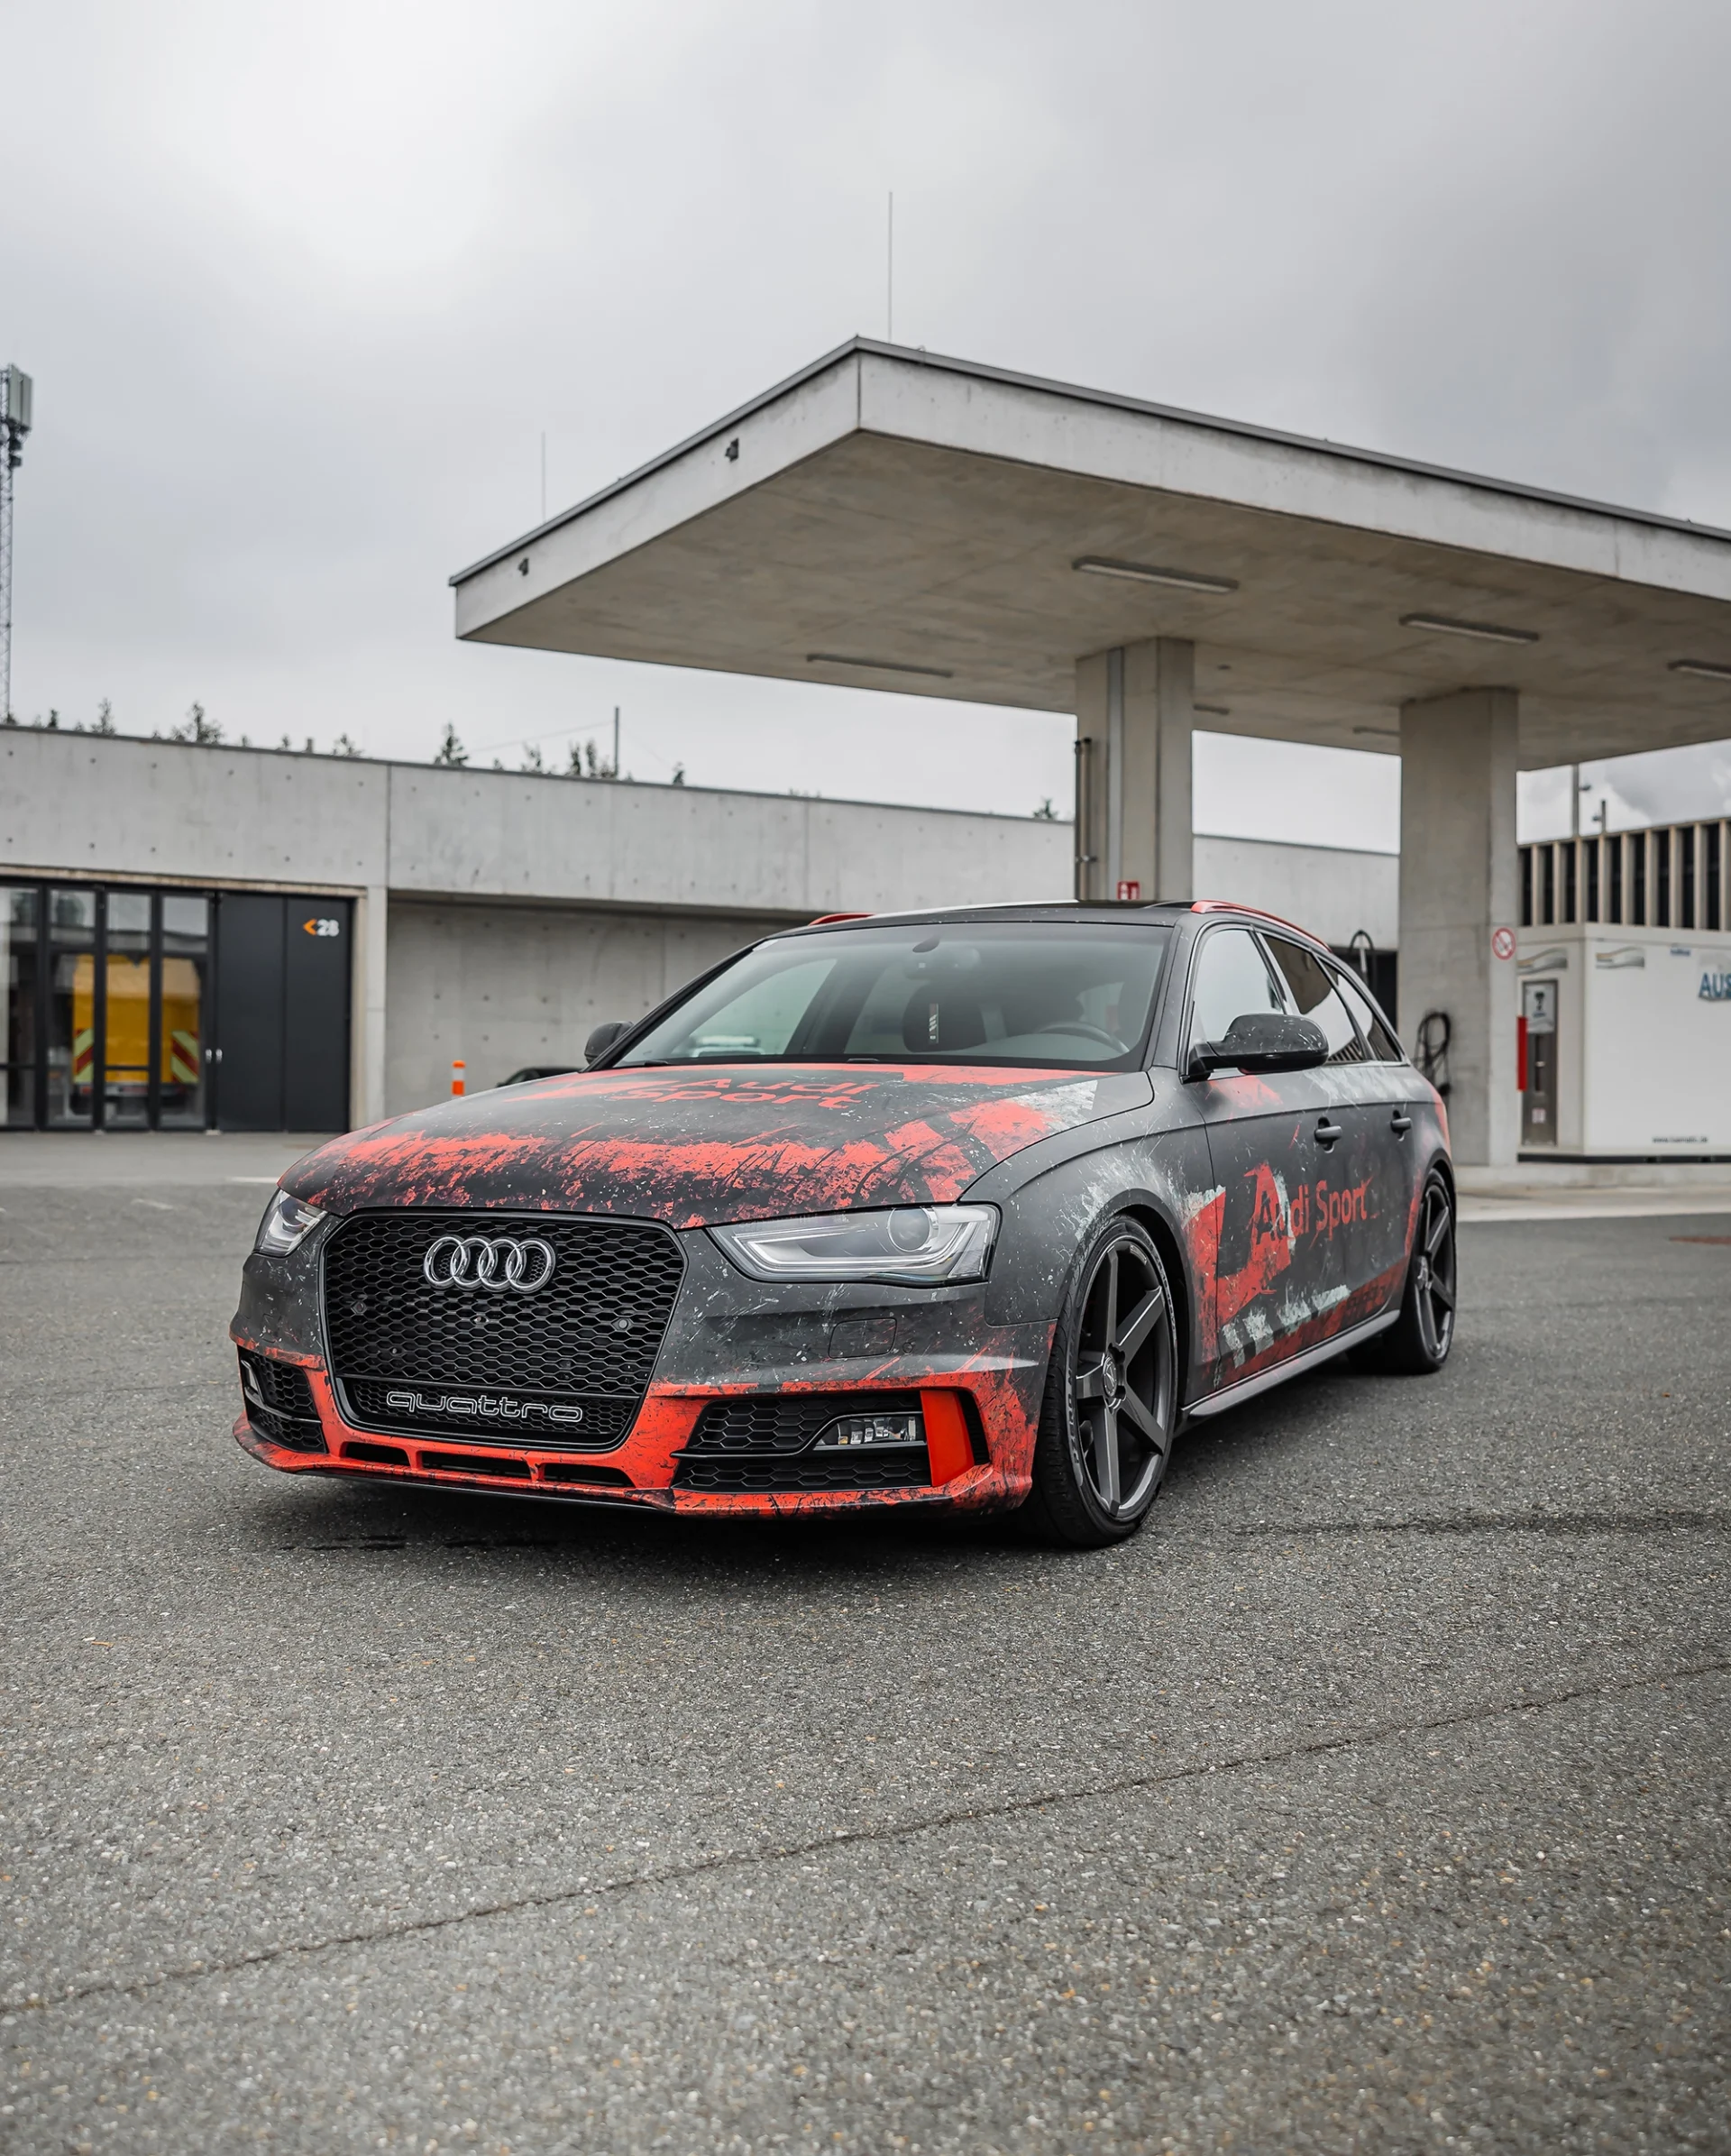 used-look Audi Sport Digitaldruckfolierung auf einem Audi A4